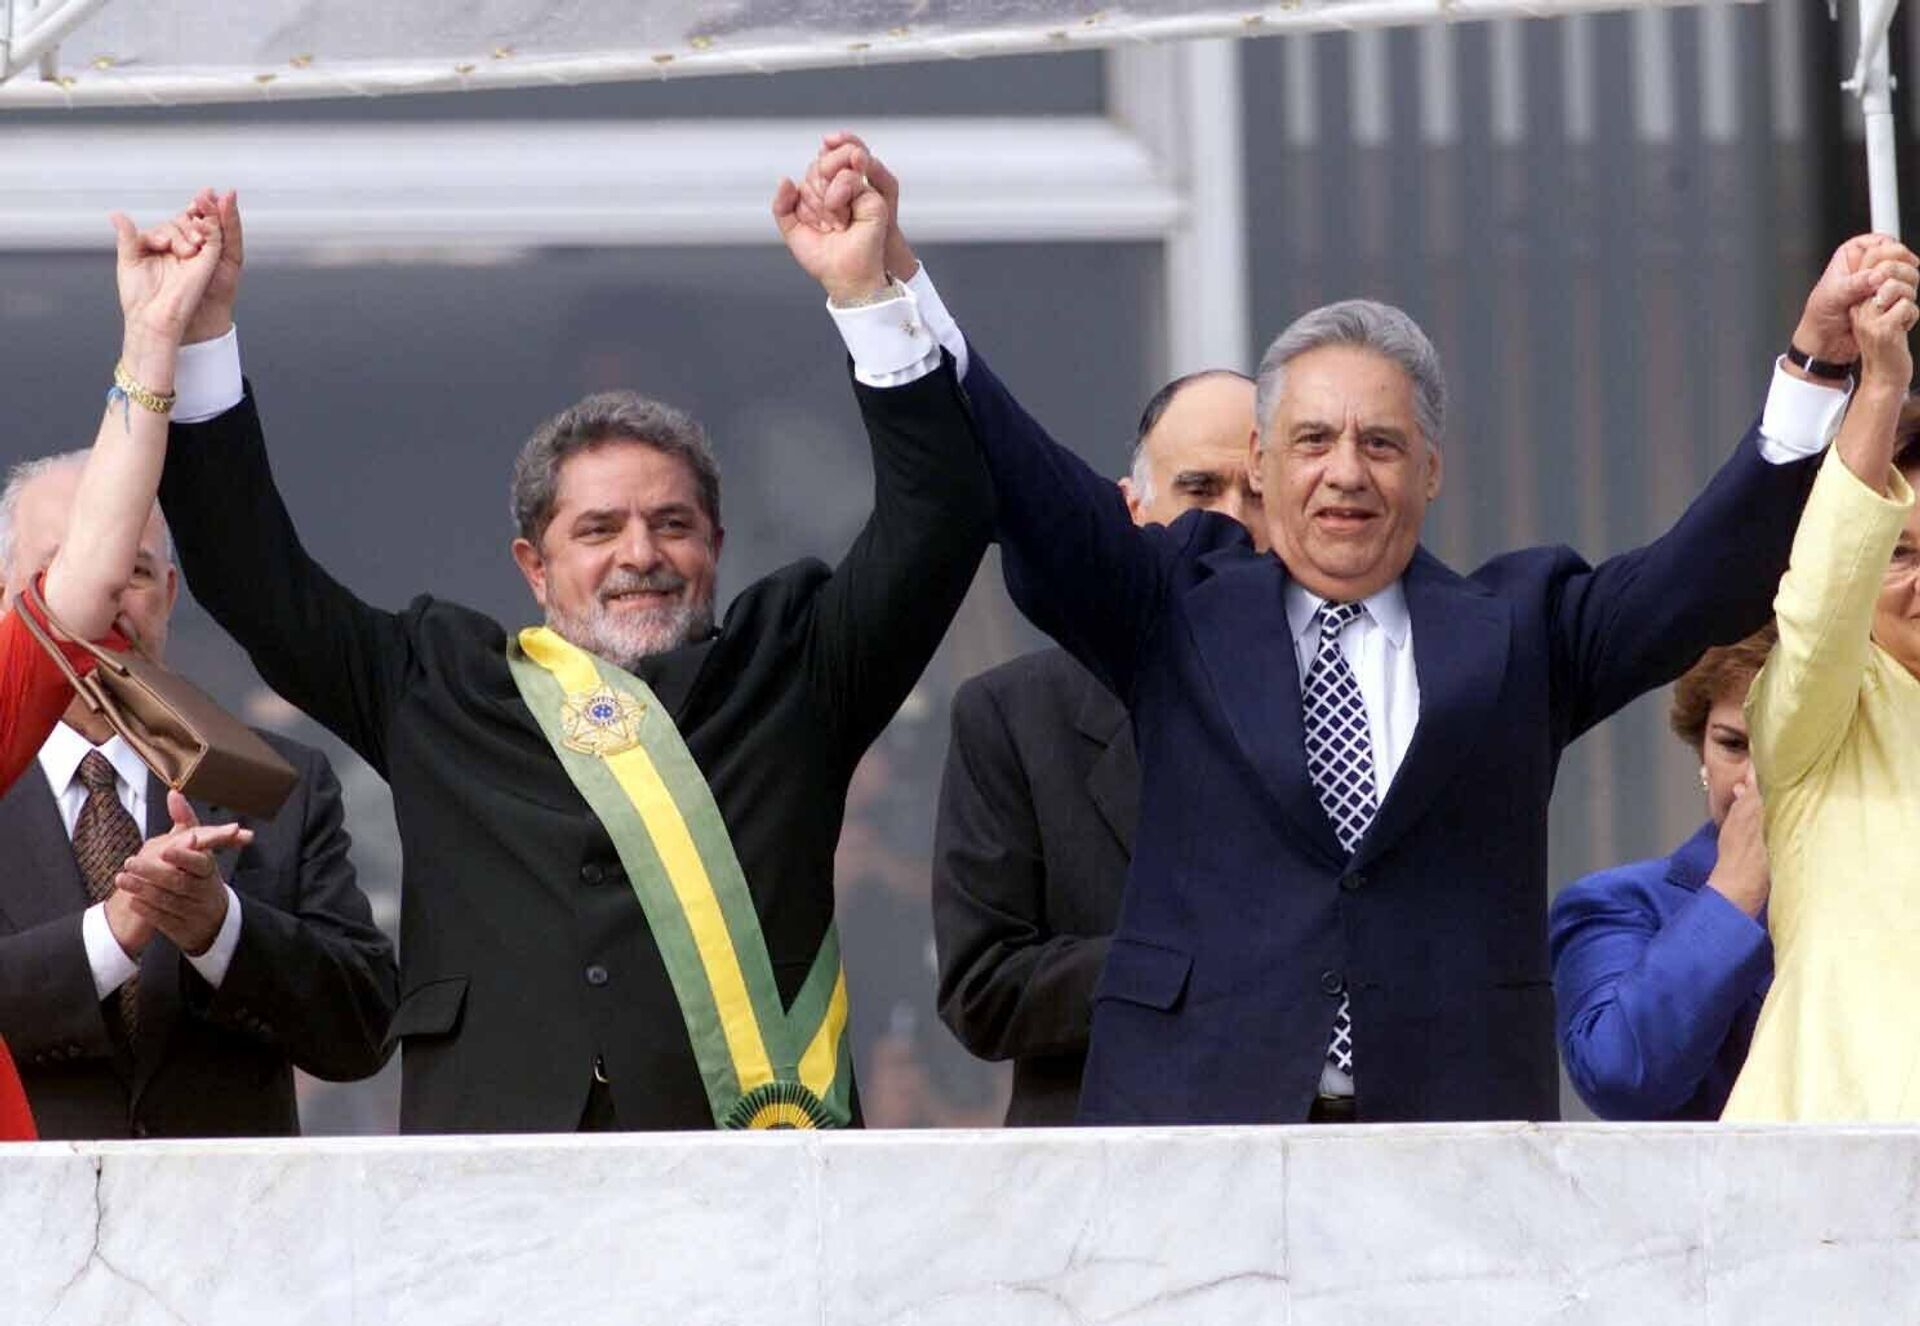 Luiz Inácio Lula da Silva (PT) ao lado de seu antecessor, Fernando Henrique Cardoso (PSDB), após receber a faixa presidencial no parlatório do Palácio do Planalto, em Brasília (DF), em 1º de janeiro de 2003 - Sputnik Brasil, 1920, 30.10.2022